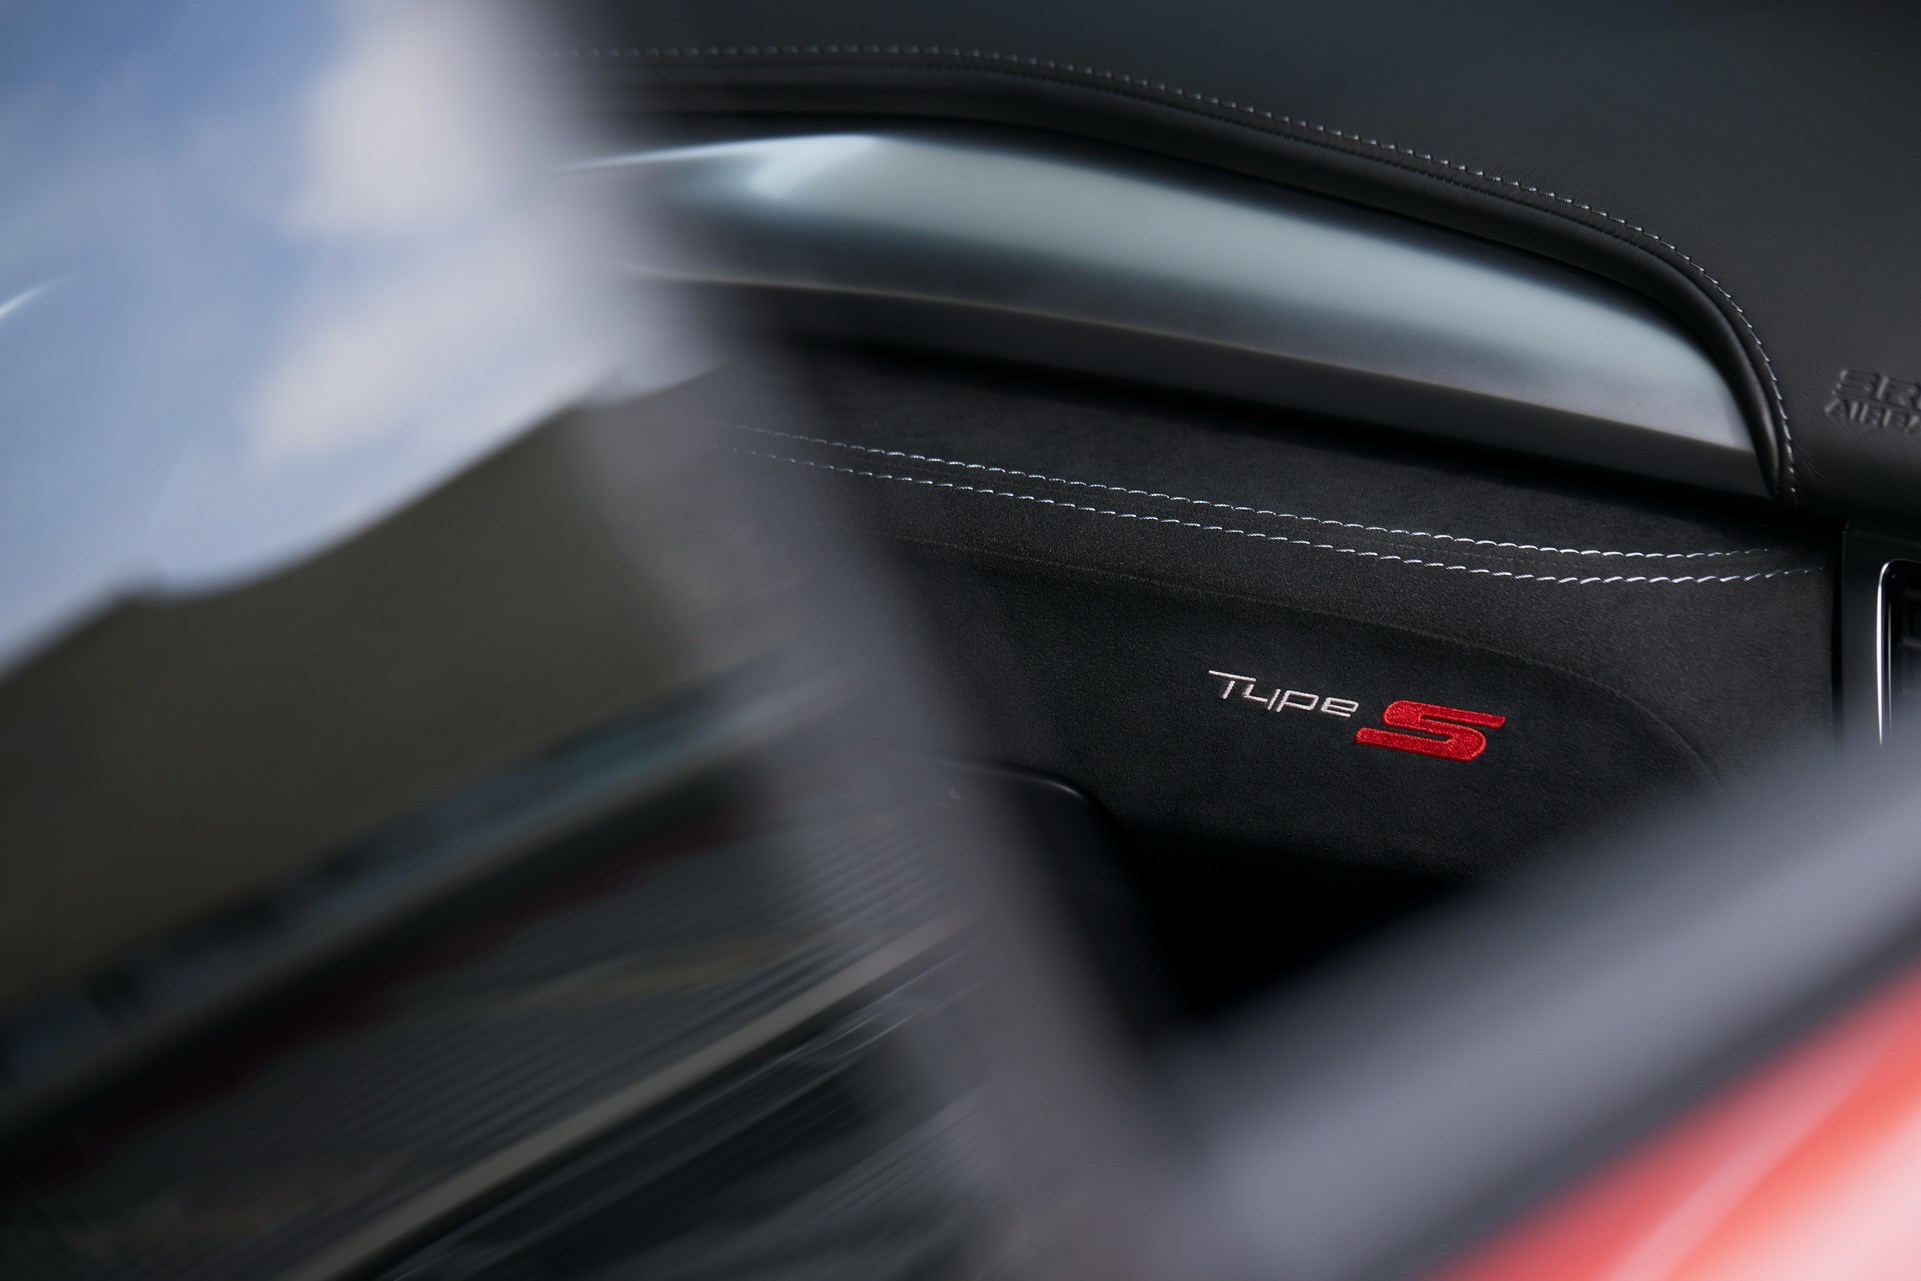 限量生产350台 讴歌NSX Type S正式发布